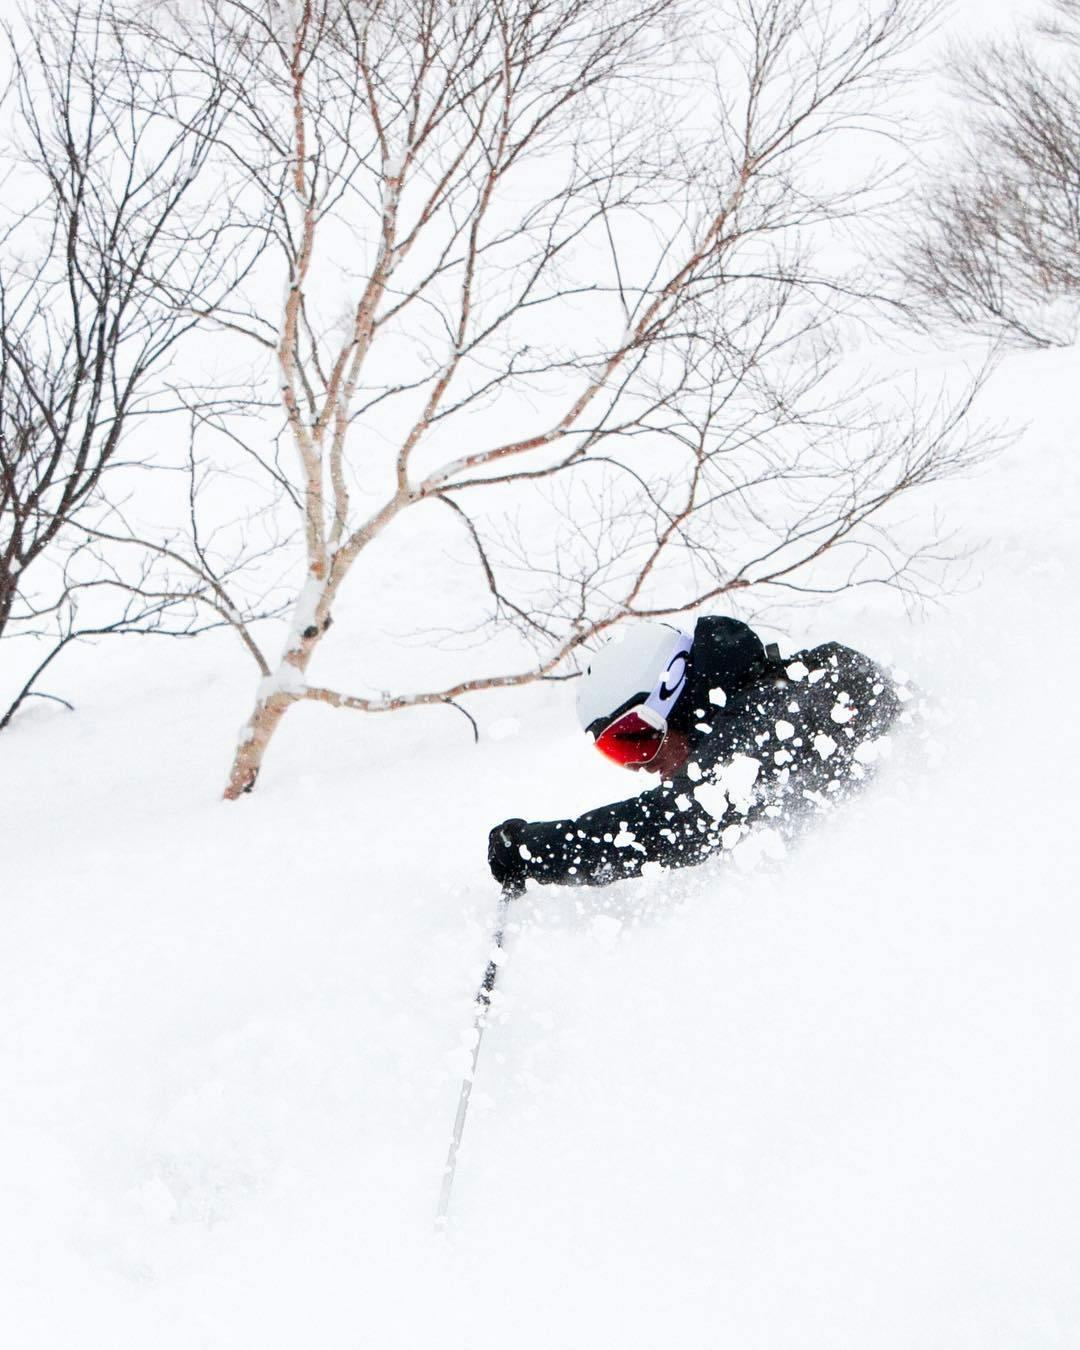 Guy skiing in Powder Niseko Japan